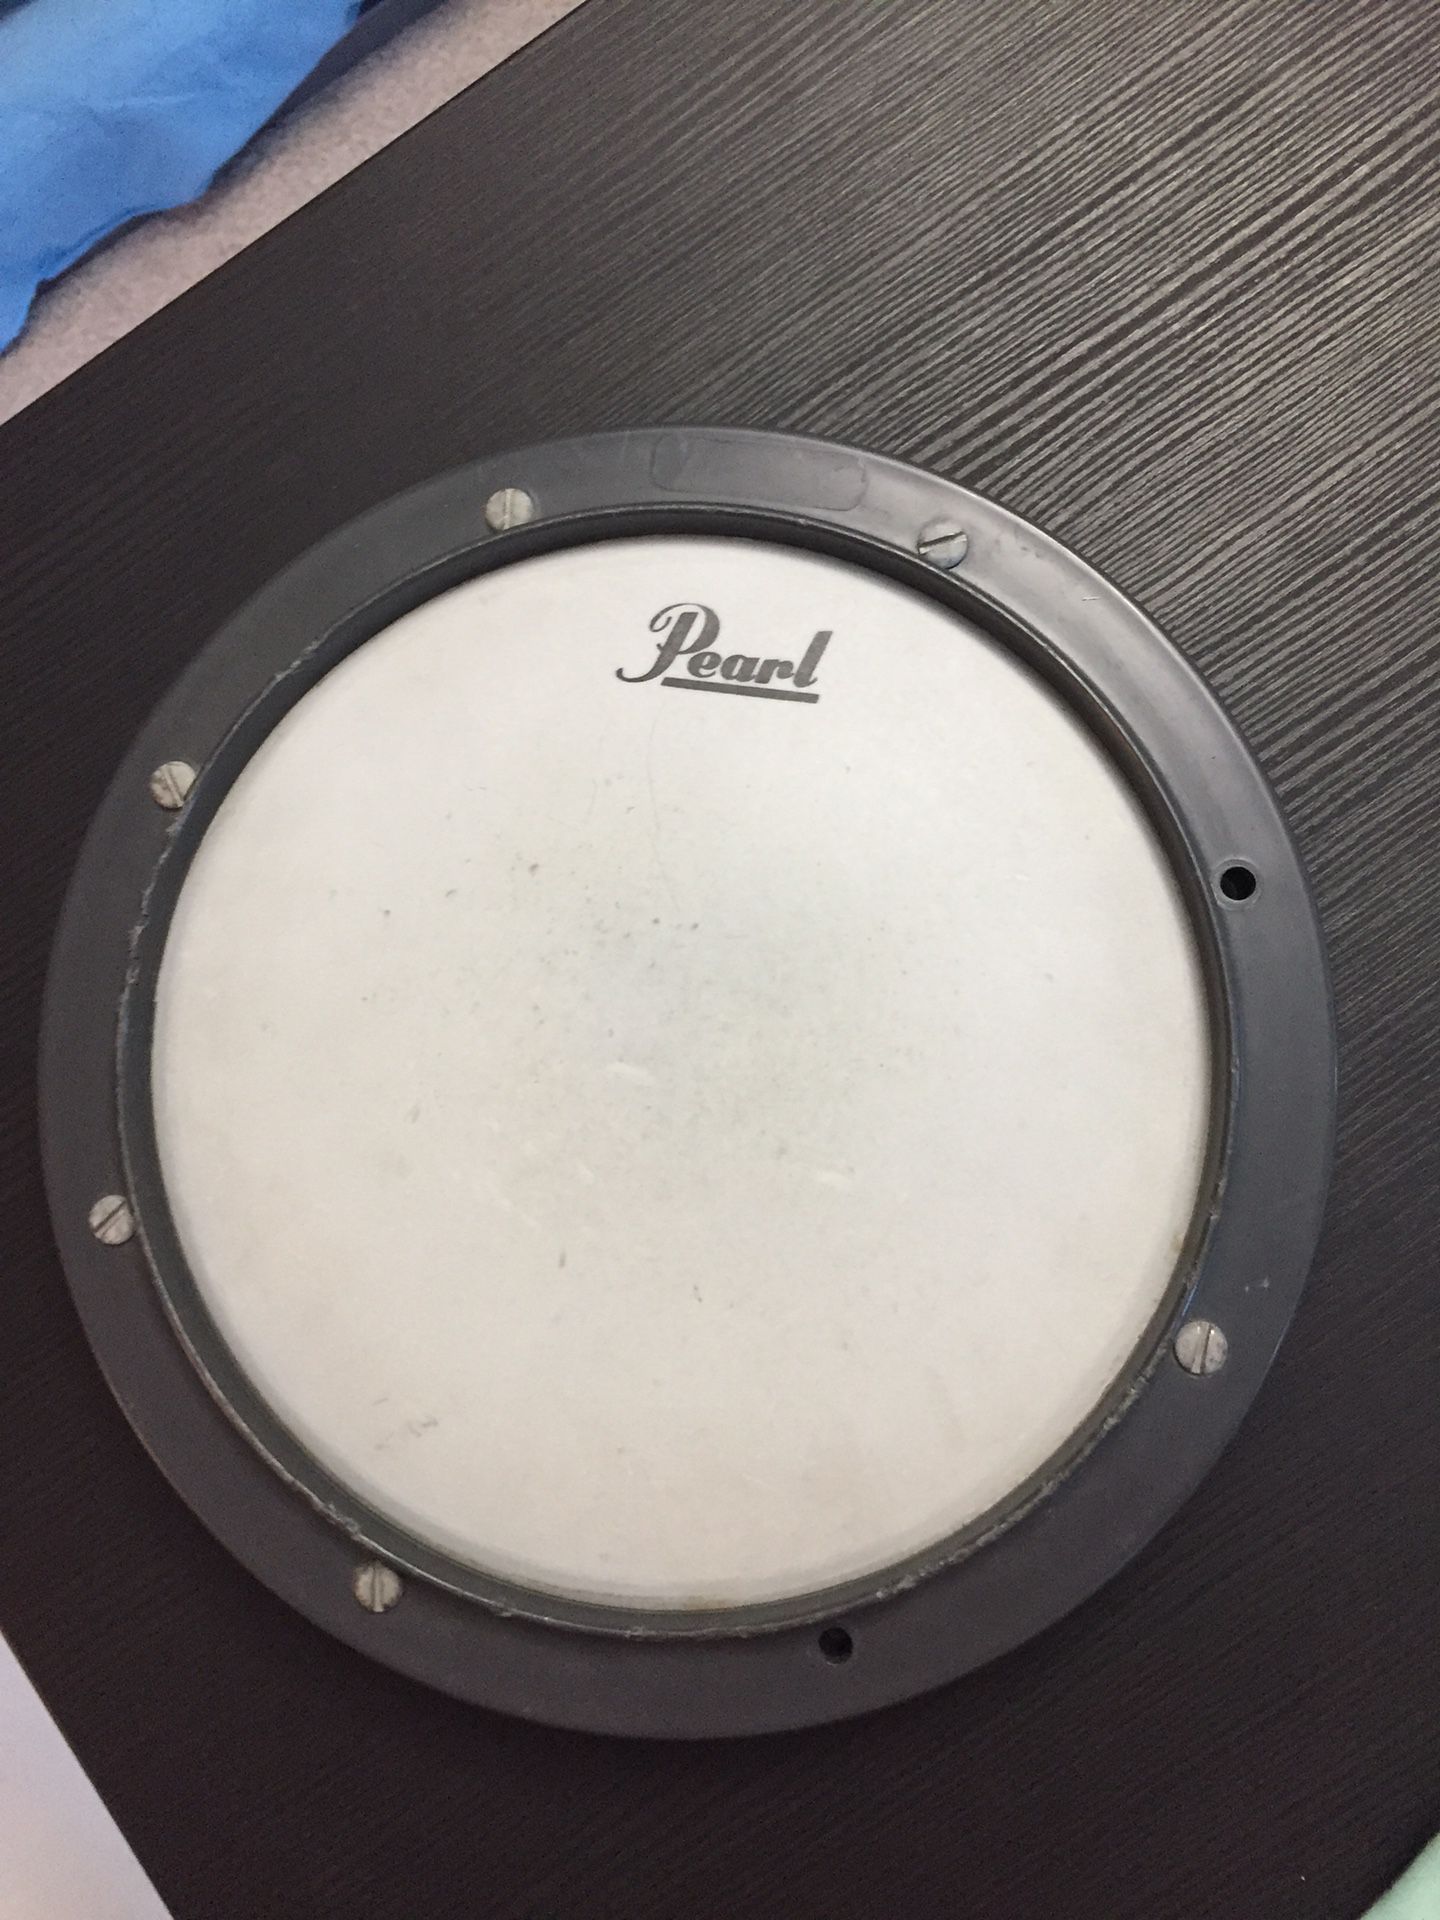 Pearl drum pad